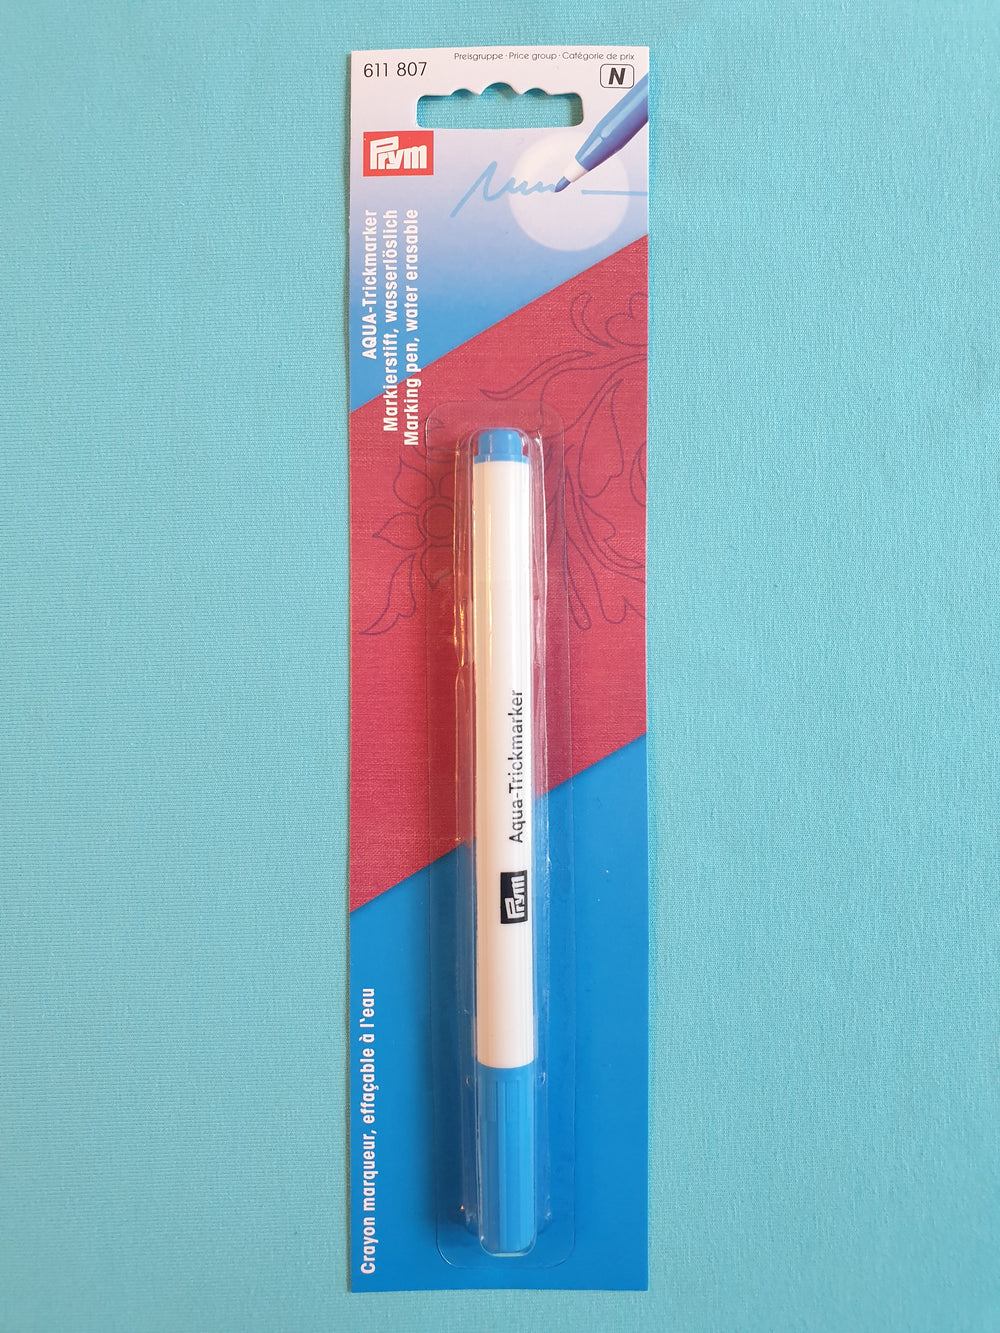 Trickmarker Stift Markierstift selbst löschend hellblau Prym